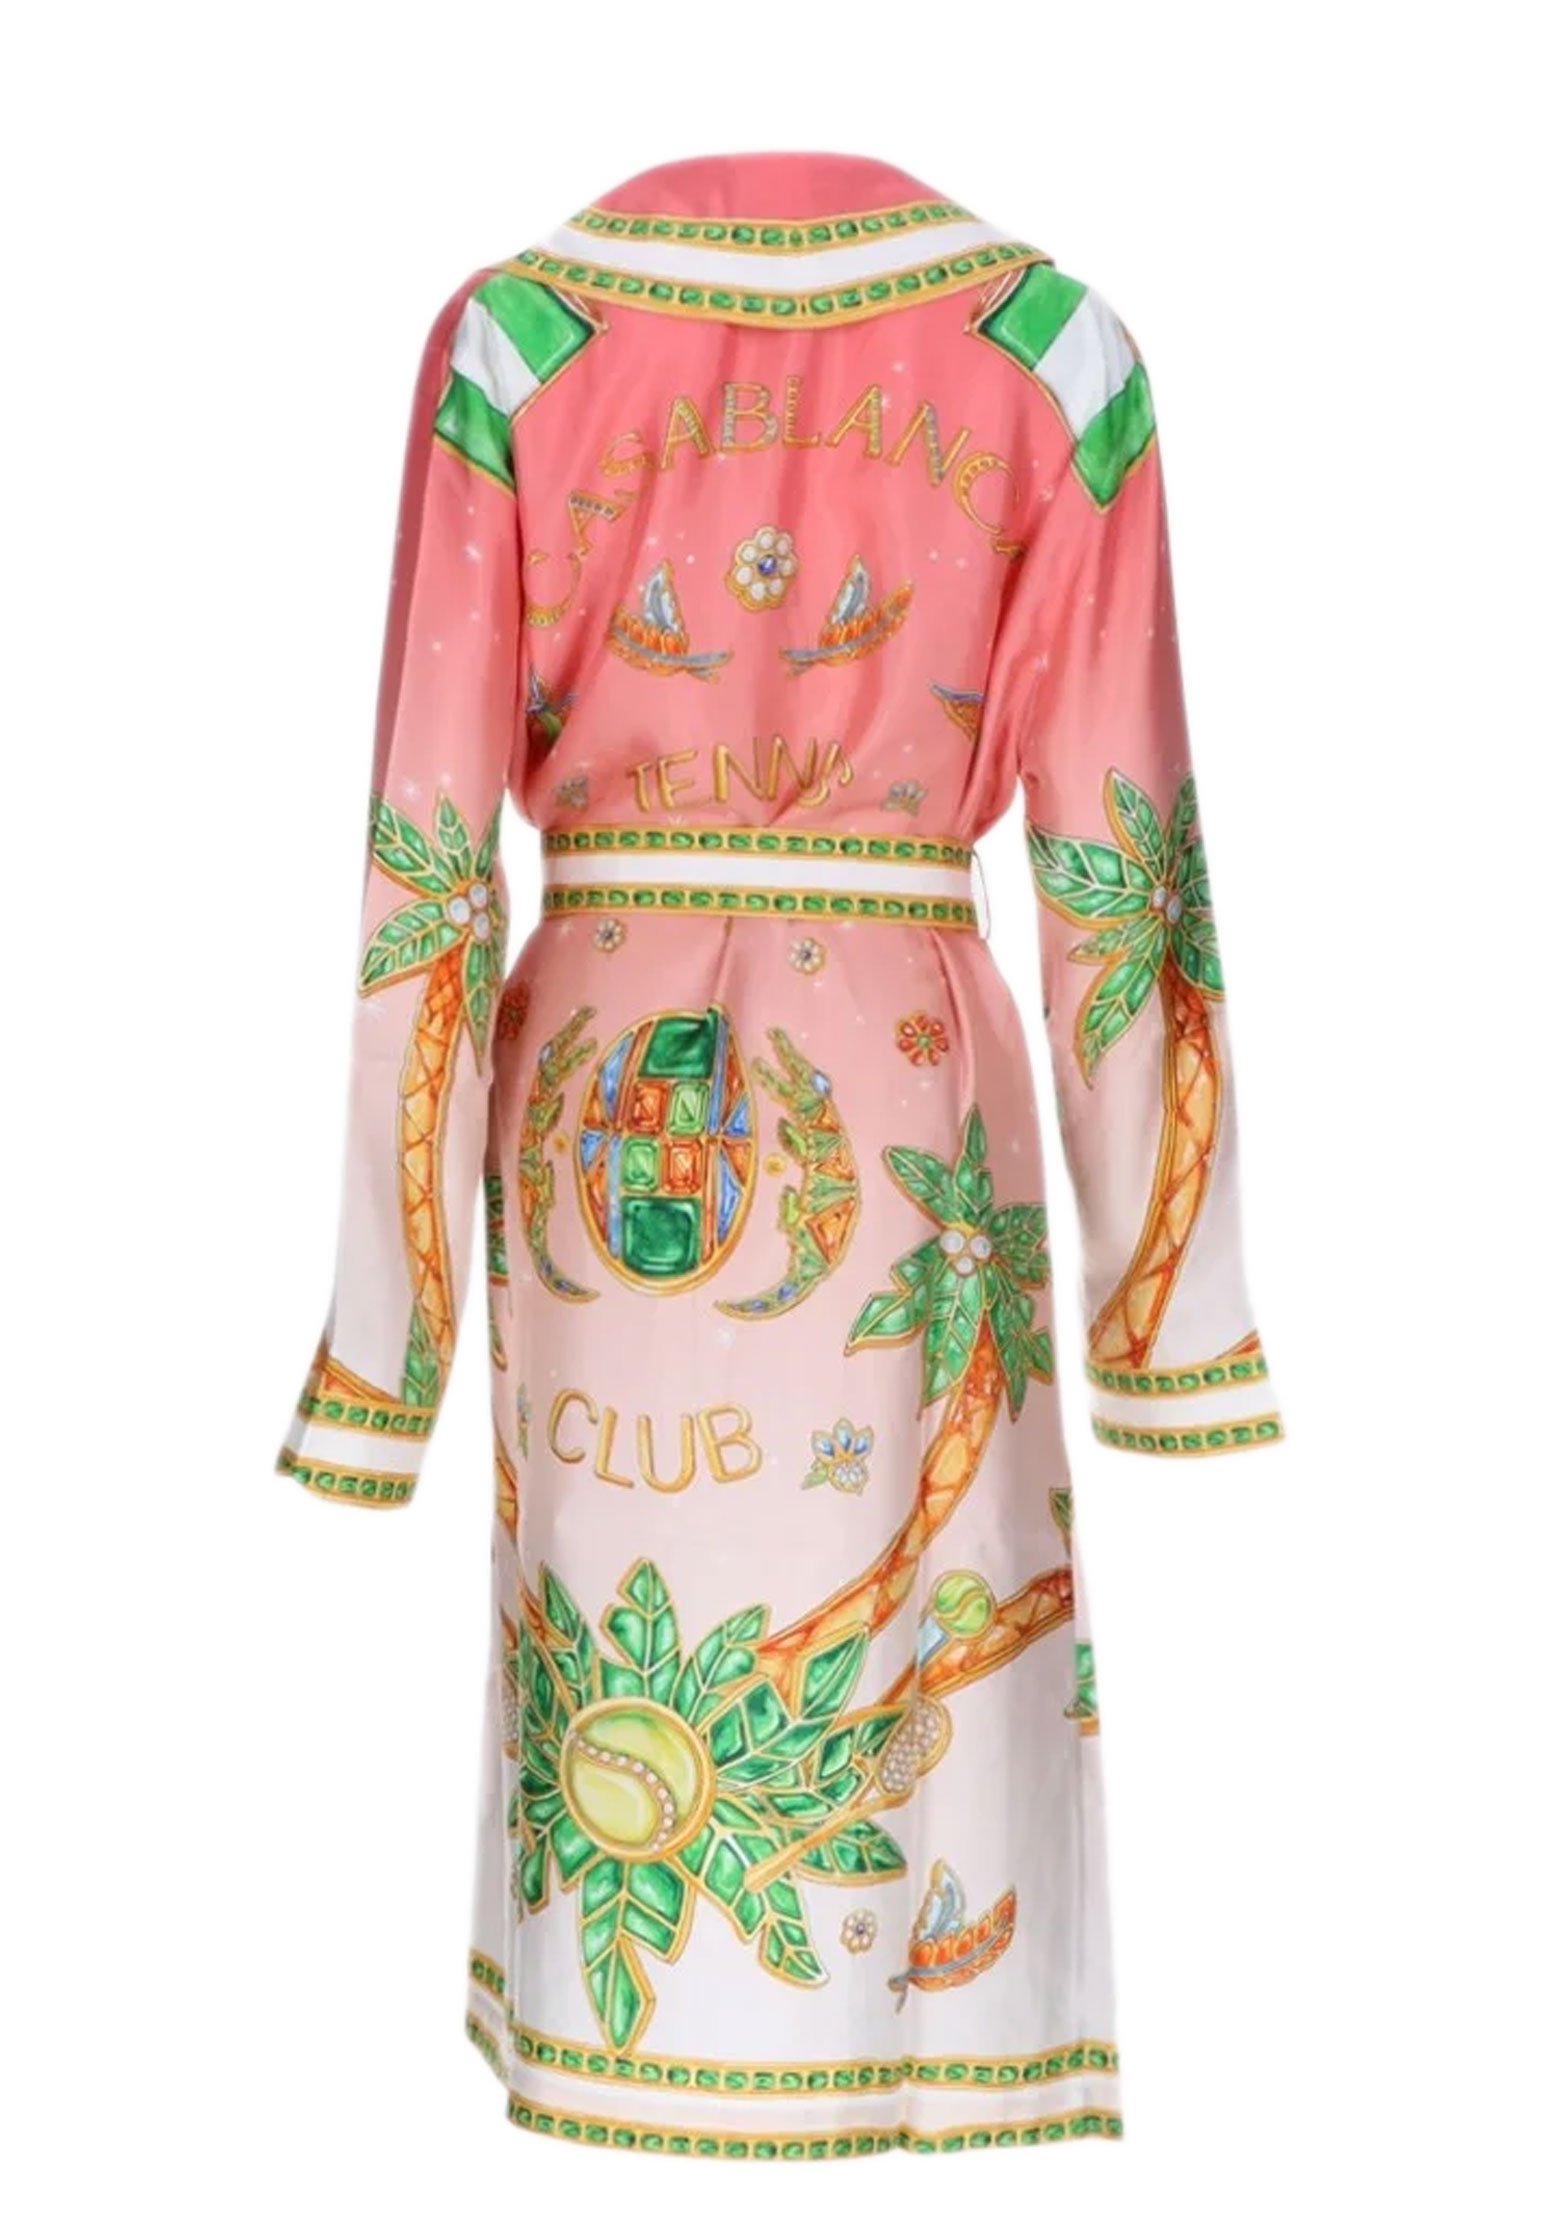 Robe CASABLANCA Color: multicolor (Code: 4010) in online store Allure